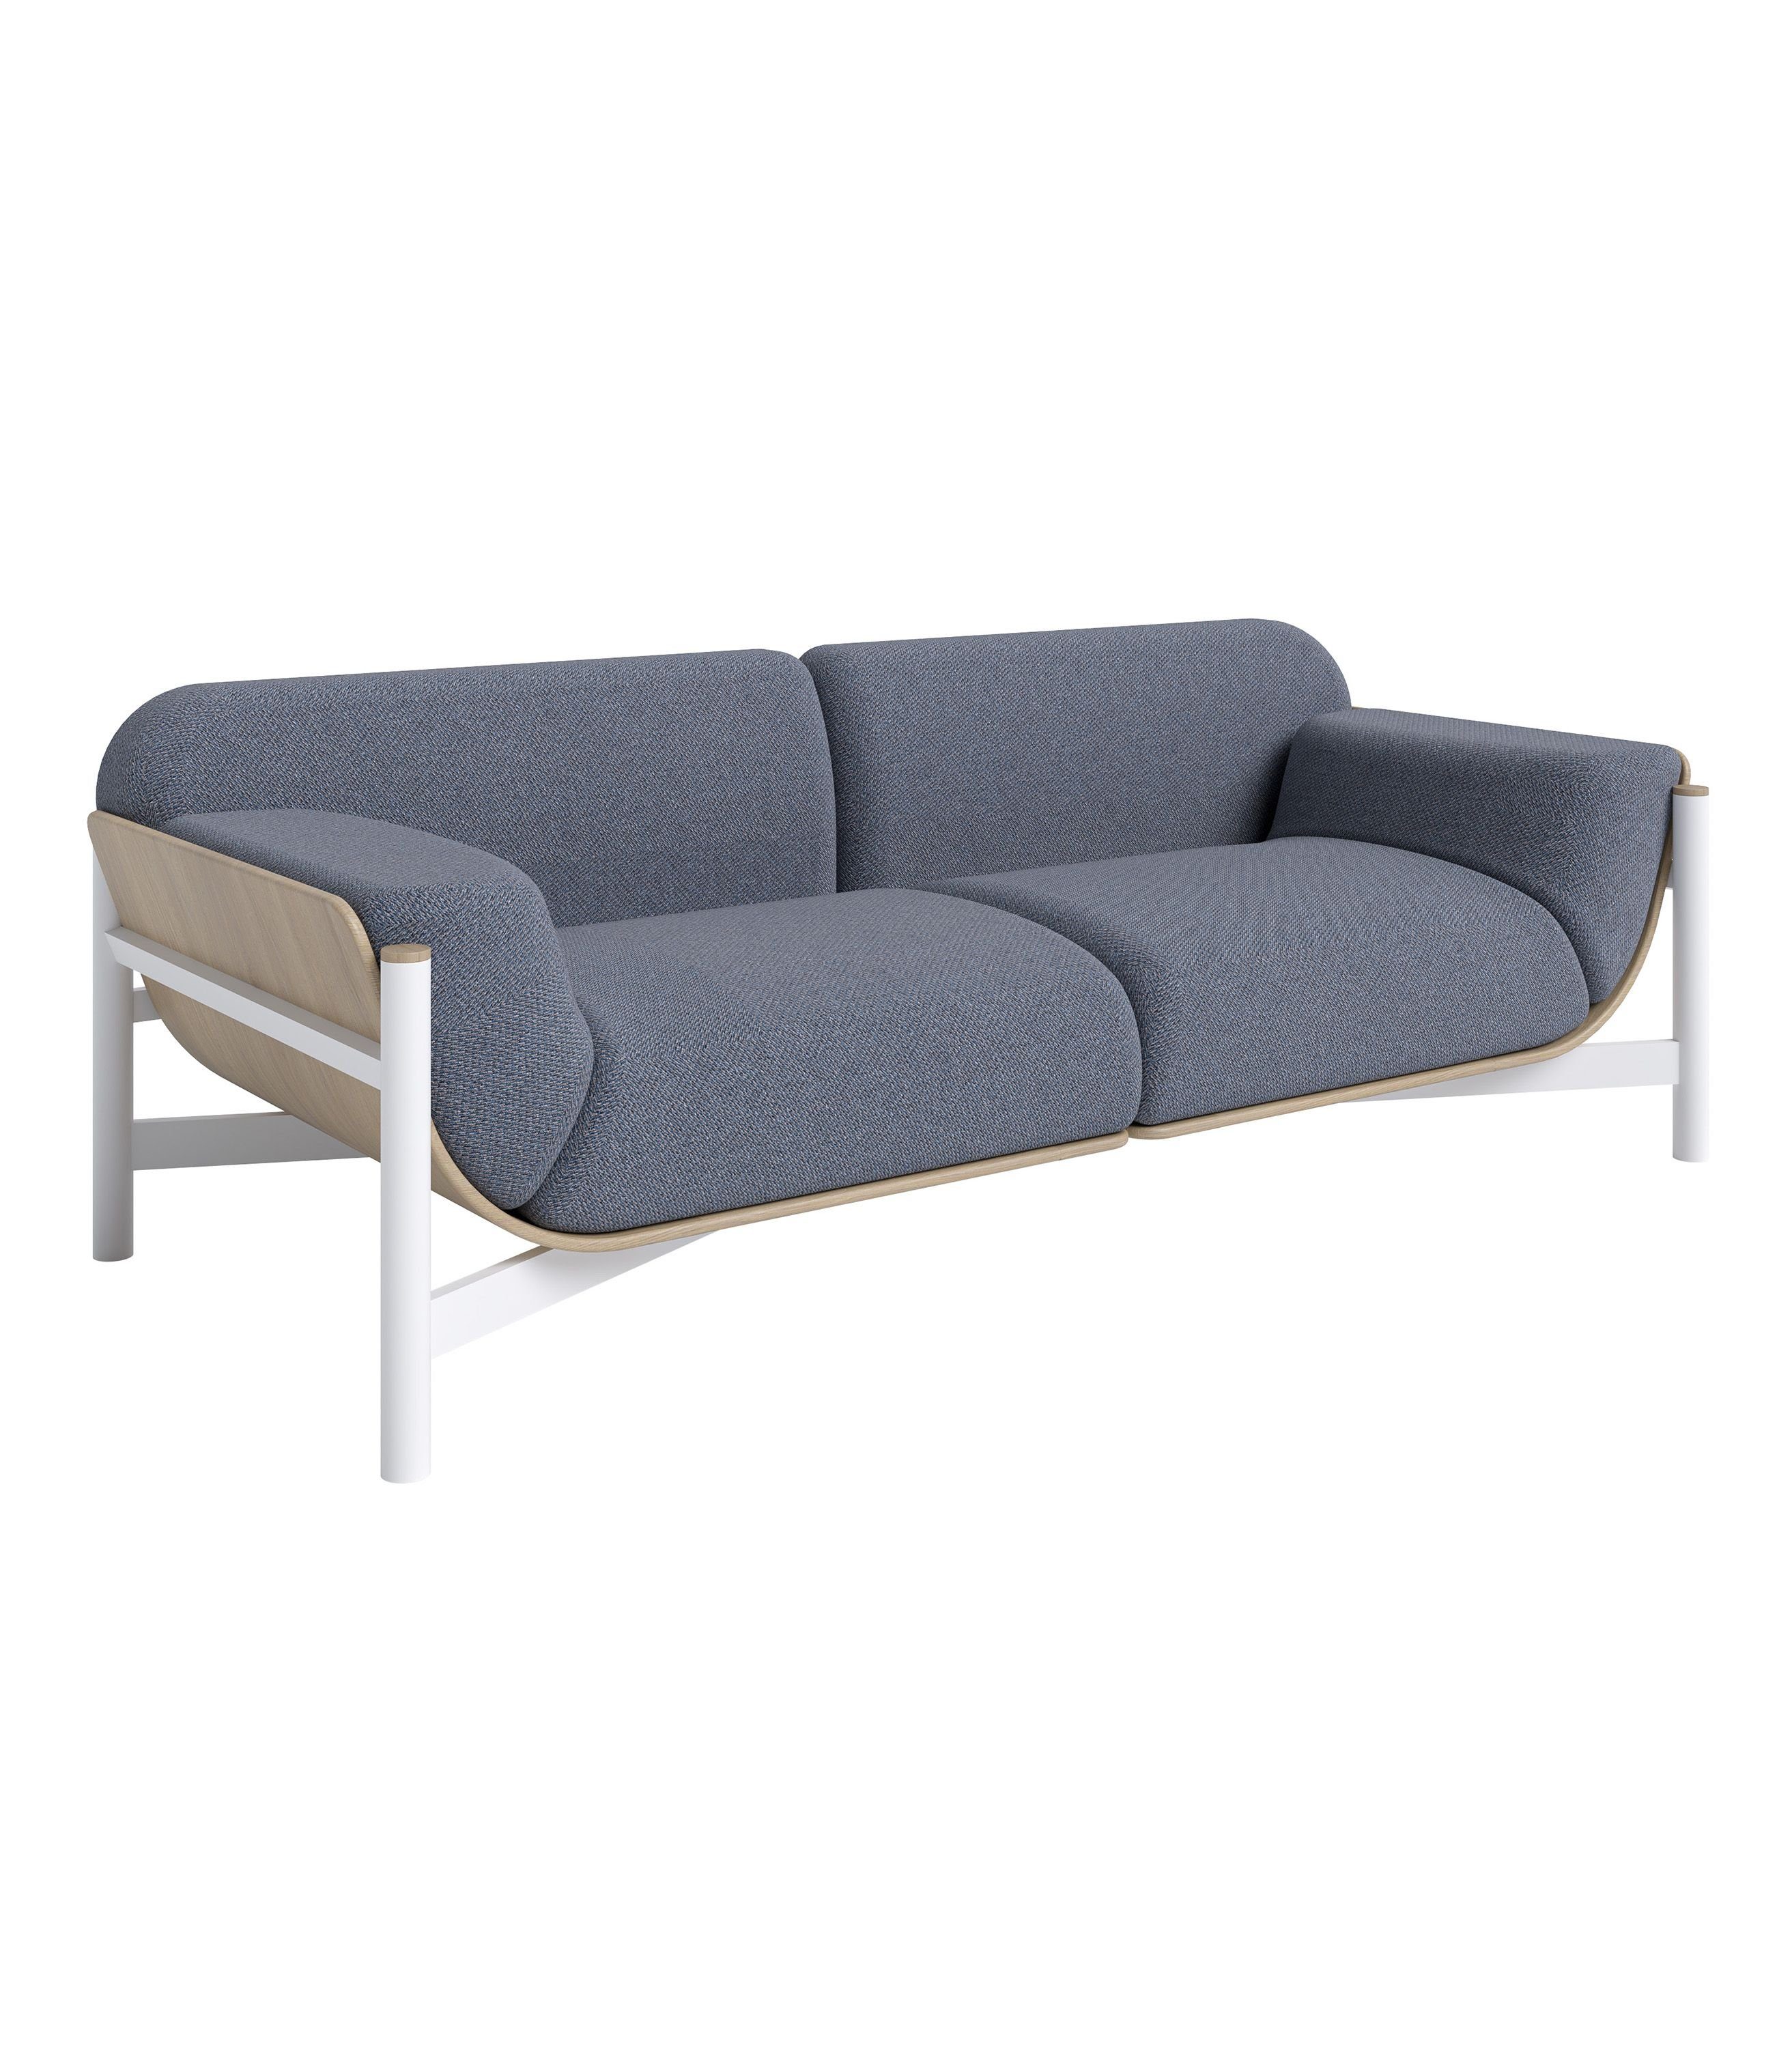 Ganz neu AUS! Siblo 2-Sitzer Einzigartiges Zweisitzer Sofa - Weiß skandinavischen Metallrahmen im - modernes 2-Sitzer Stil - Velo - Sofa Interieur Zweisitzer-Sofa